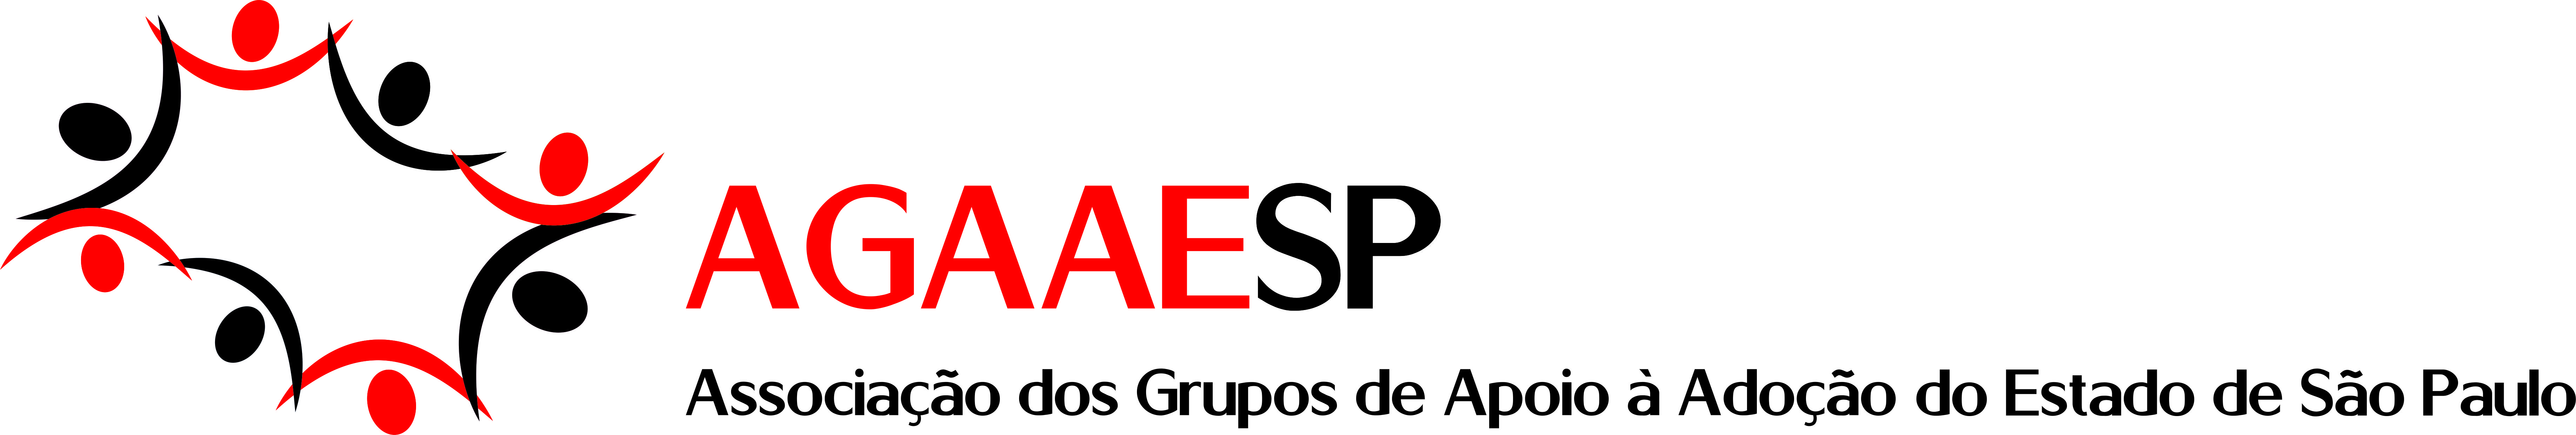 Associação dos Grupos de Apoio do Estado de São Paulo – AGAAESP